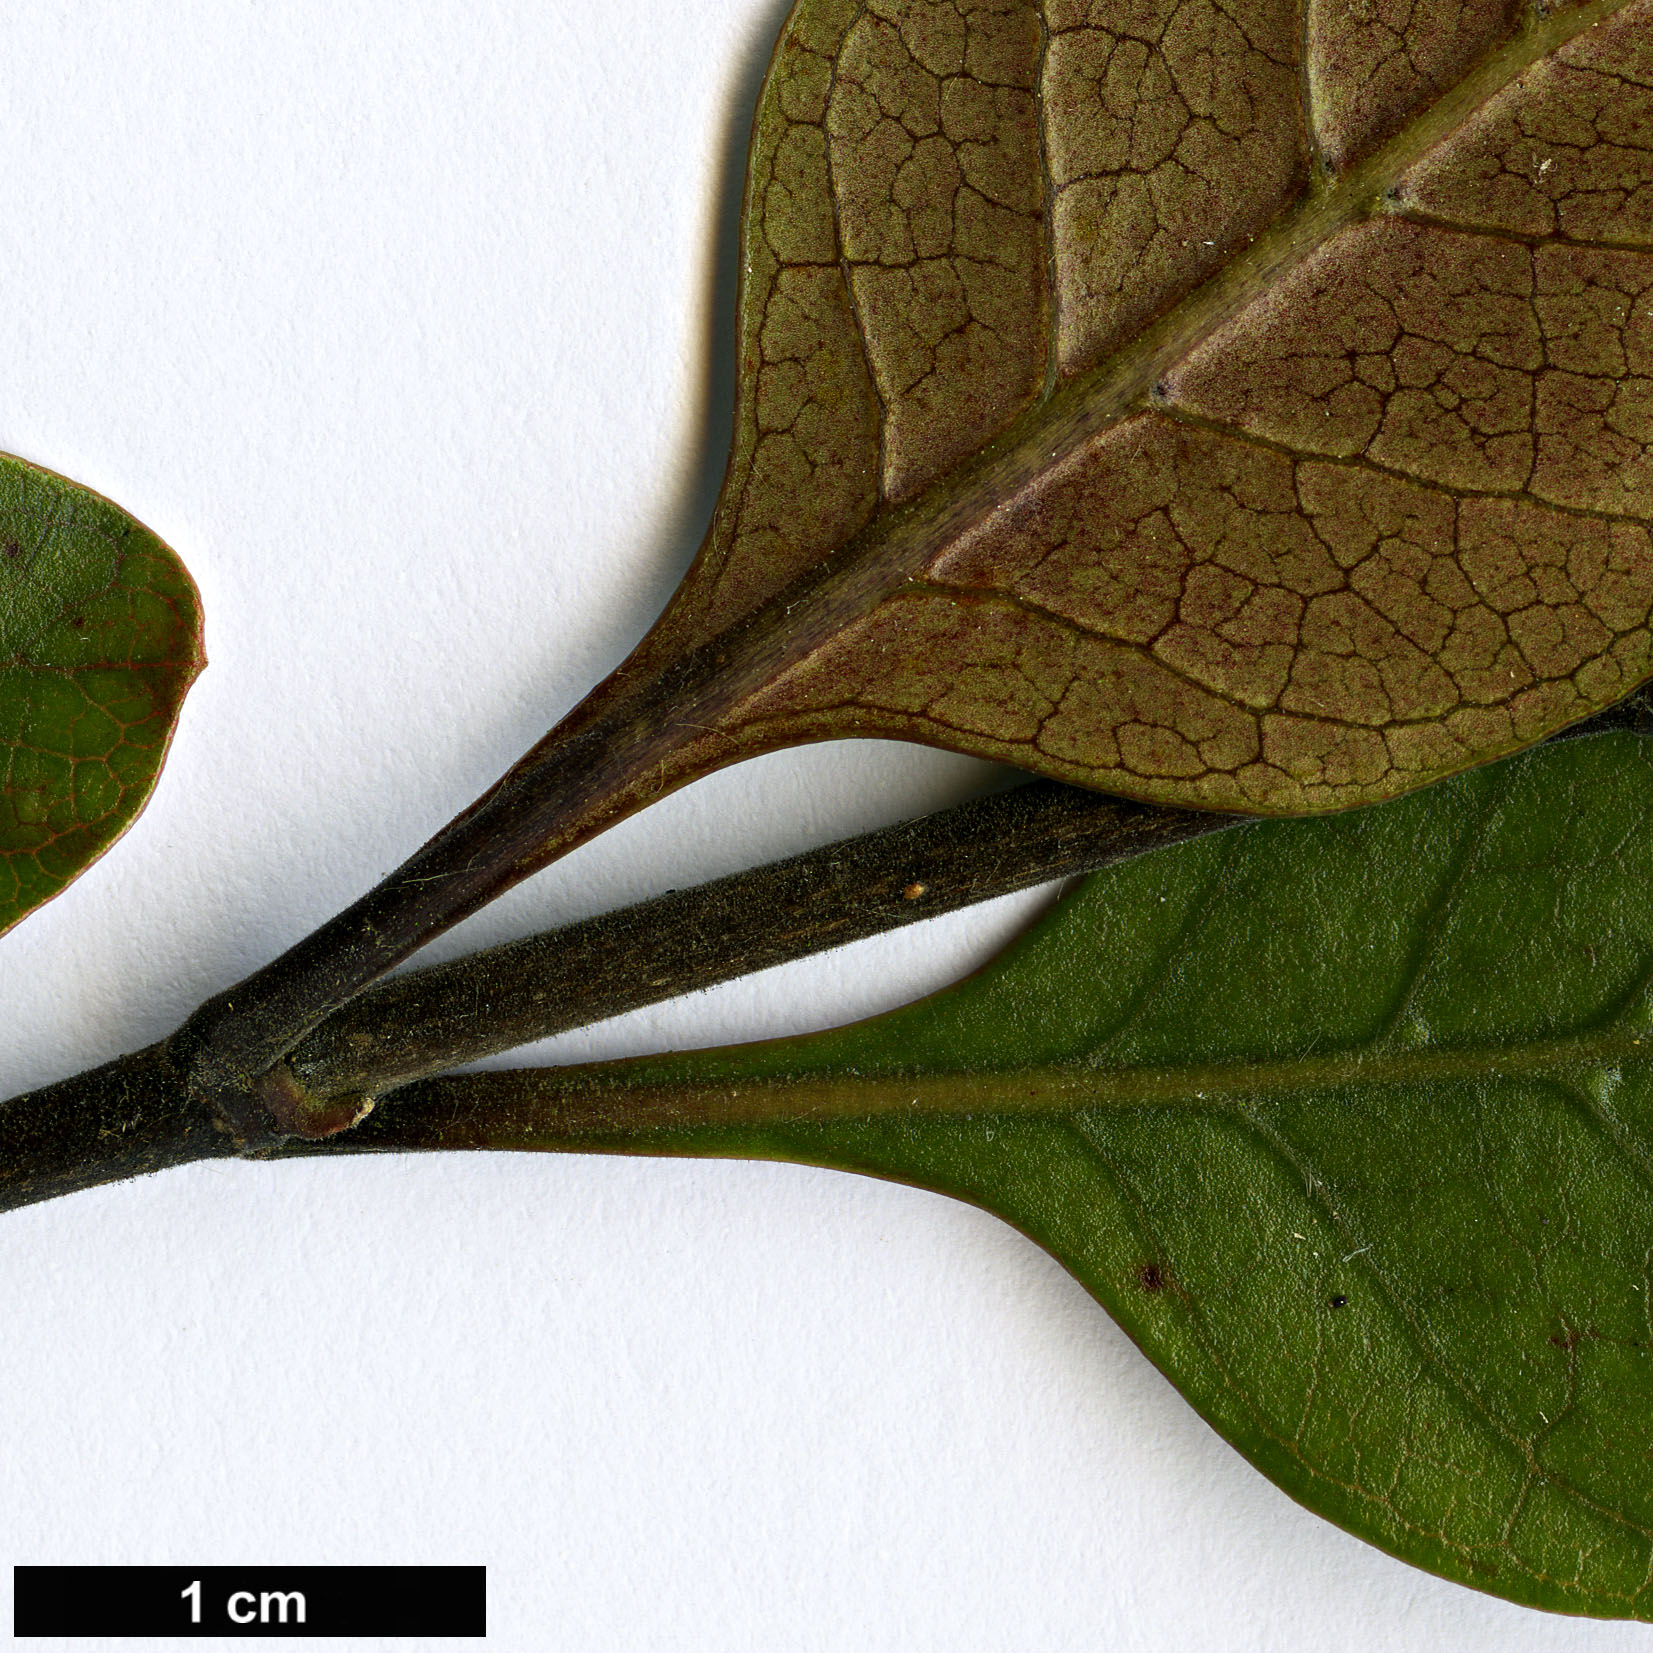 High resolution image: Family: Rubiaceae - Genus: Coprosma - Taxon: arborea - SpeciesSub: 'Purpurea'